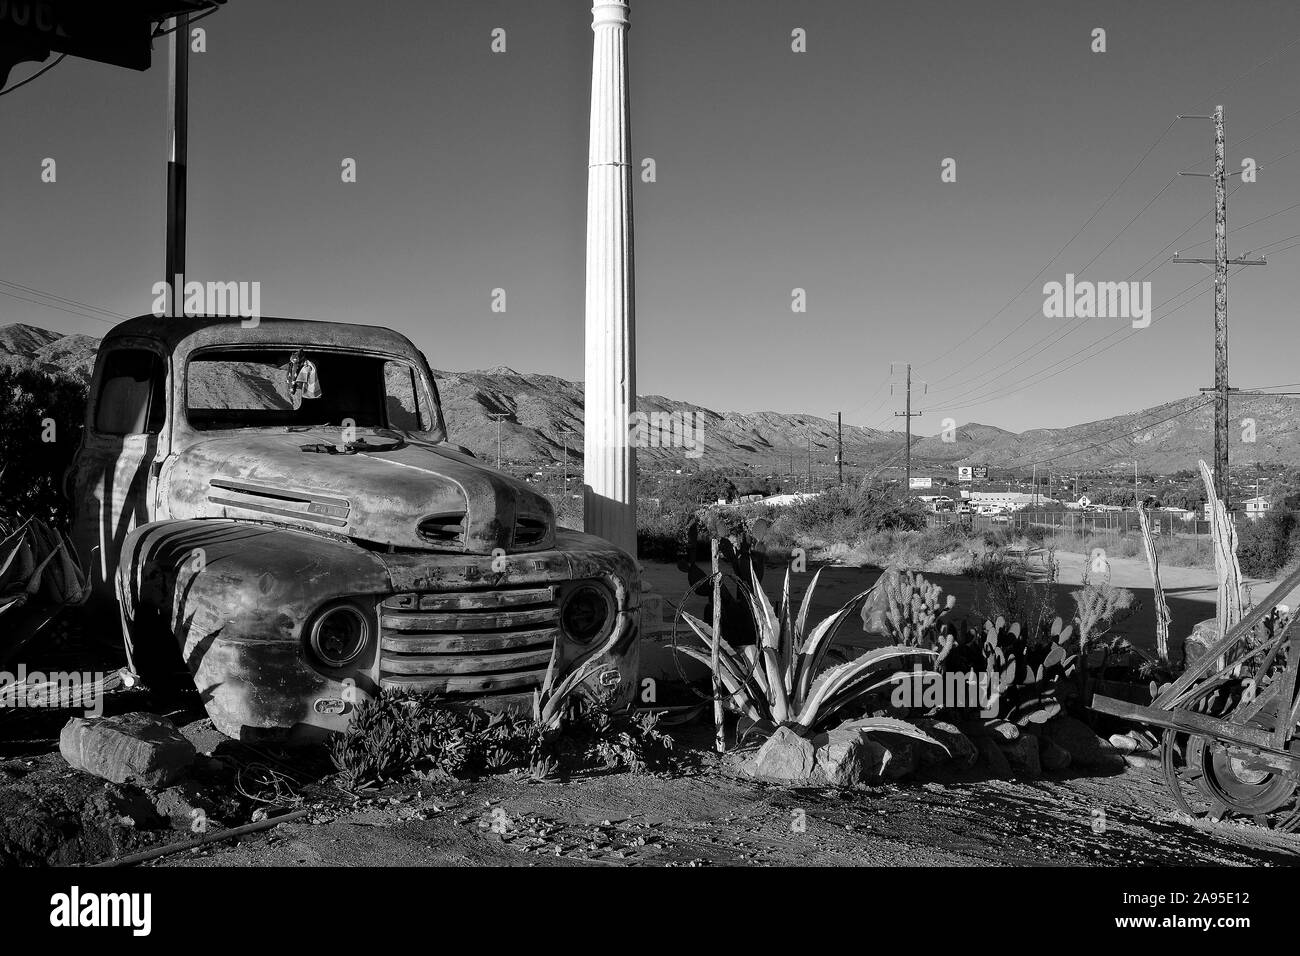 Camioneta Ford oxidado en la autopista Twentynine Palms, Yucca Valley, California, EE.UU. Foto de stock